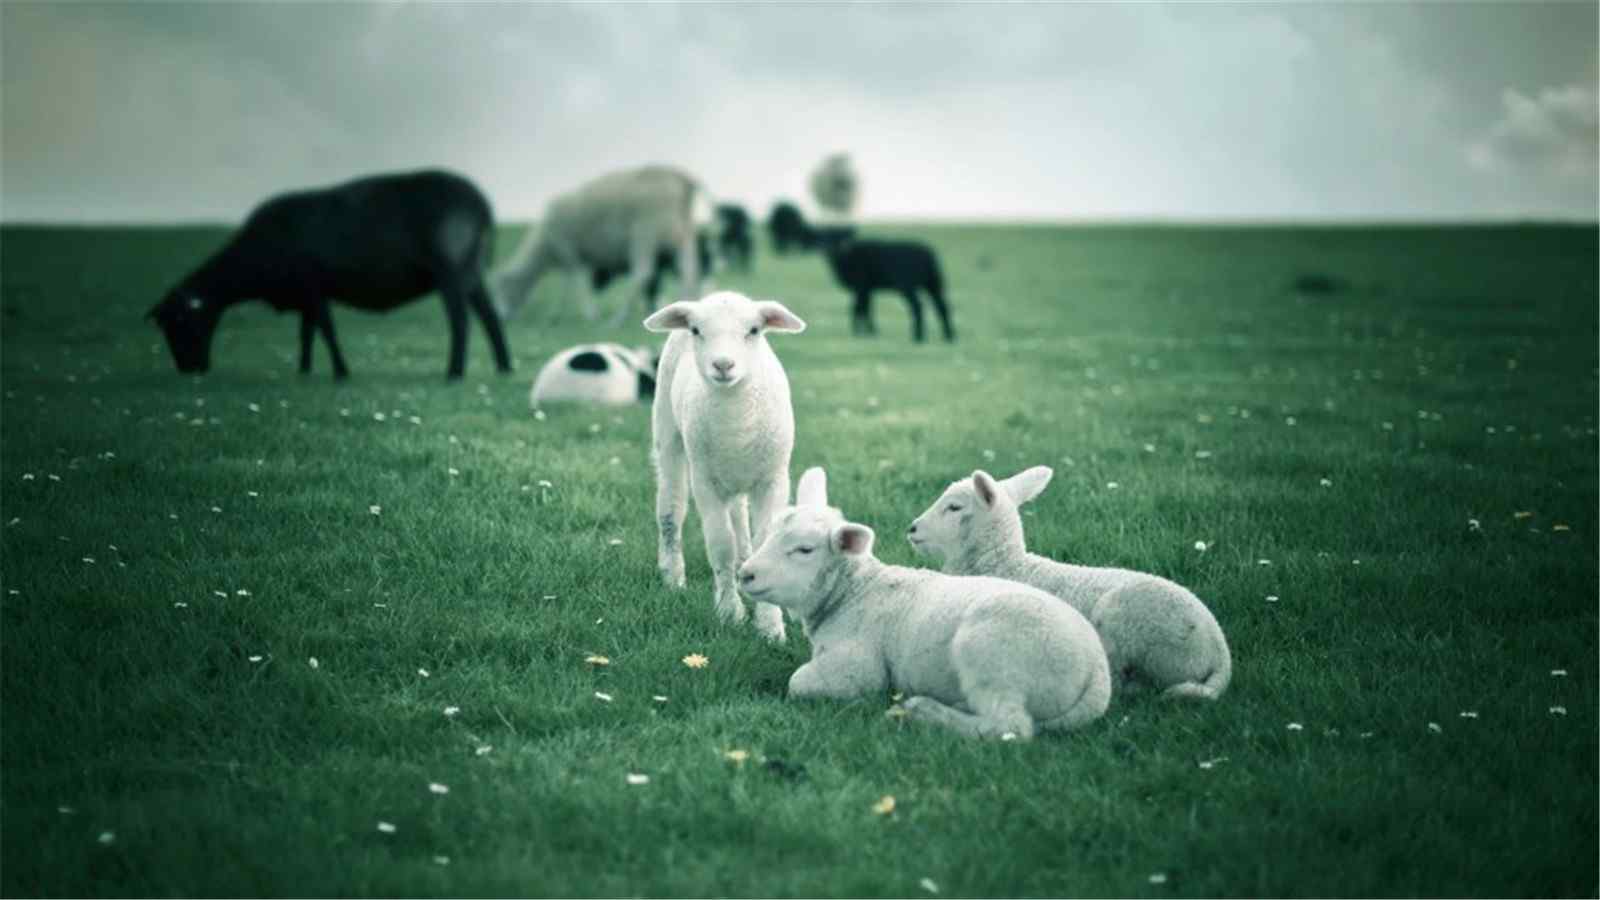 草原可爱动物绵羊高清桌面壁纸